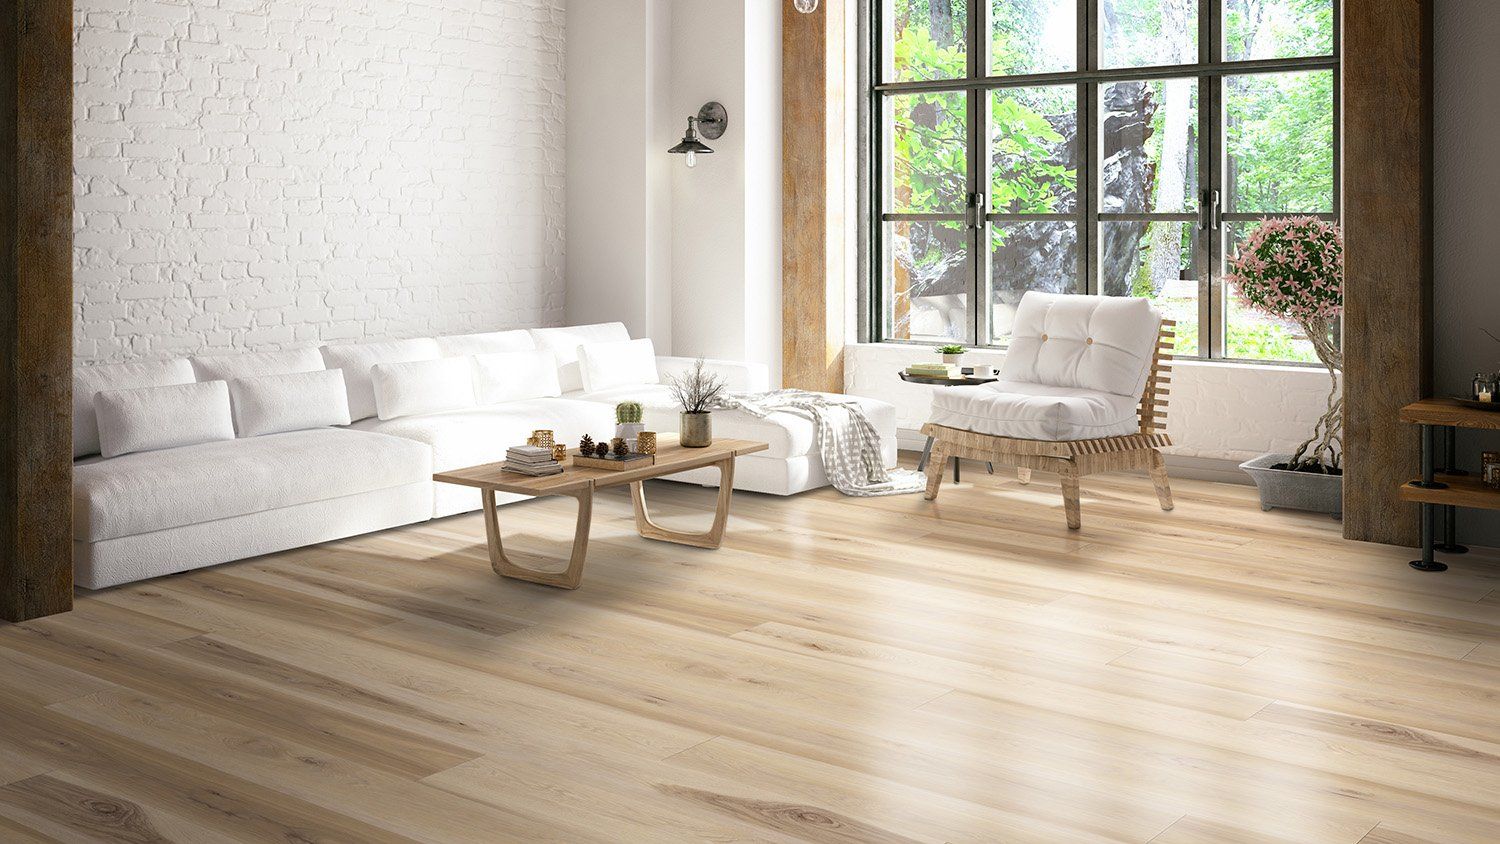 Cali vinyl floors in a sun filled living room